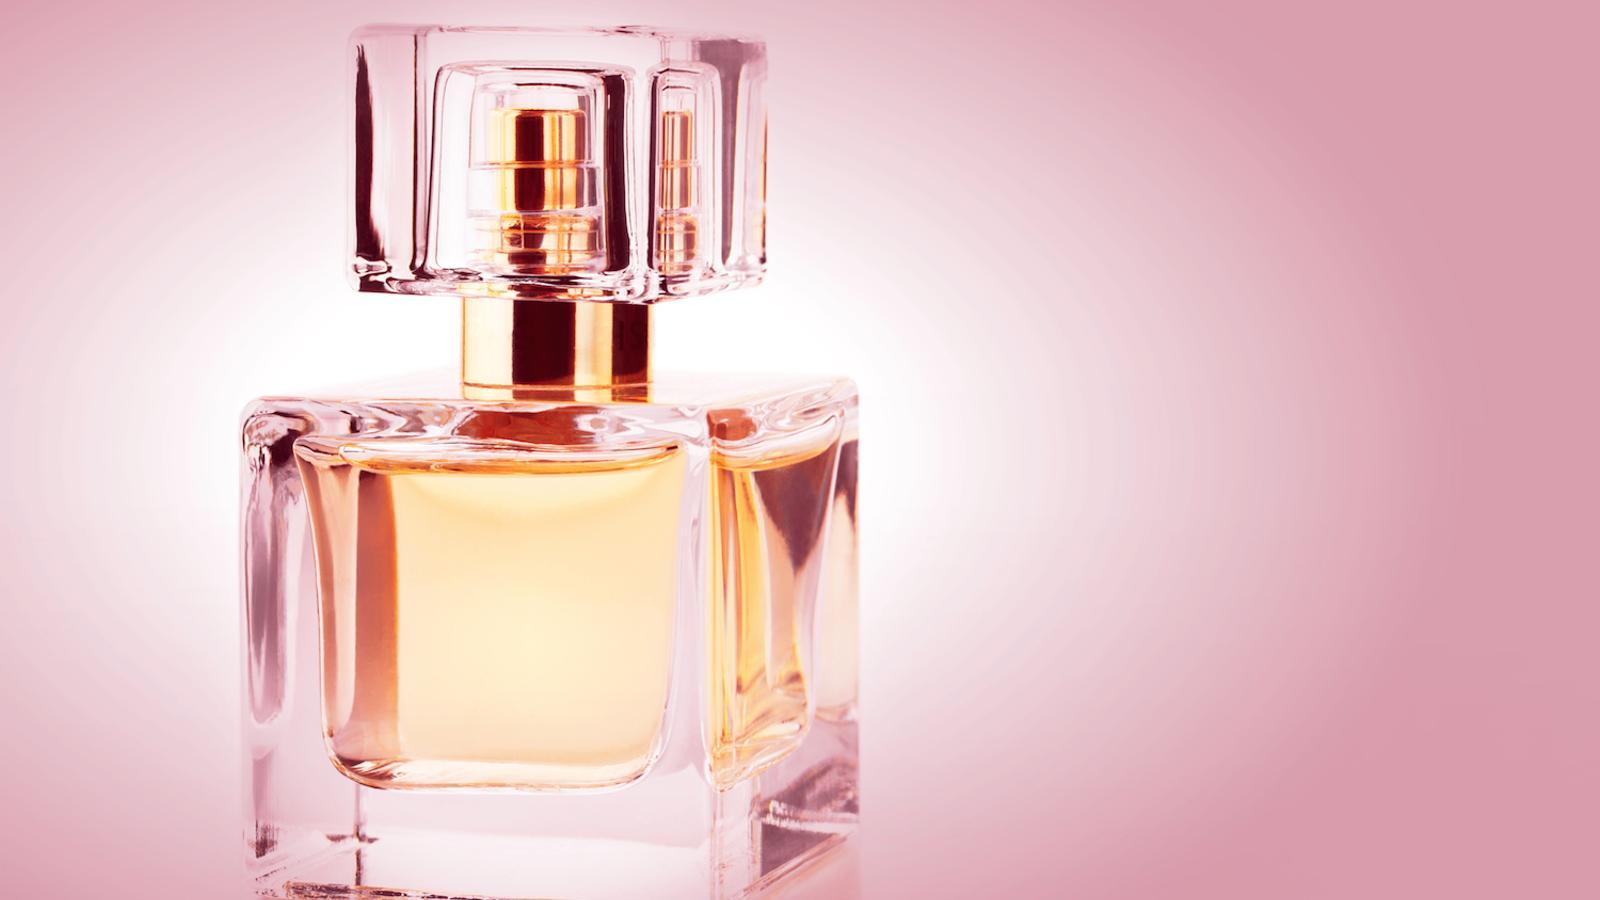 Al mercat hi ha perfums el cost real dels quals és de 30 cèntims